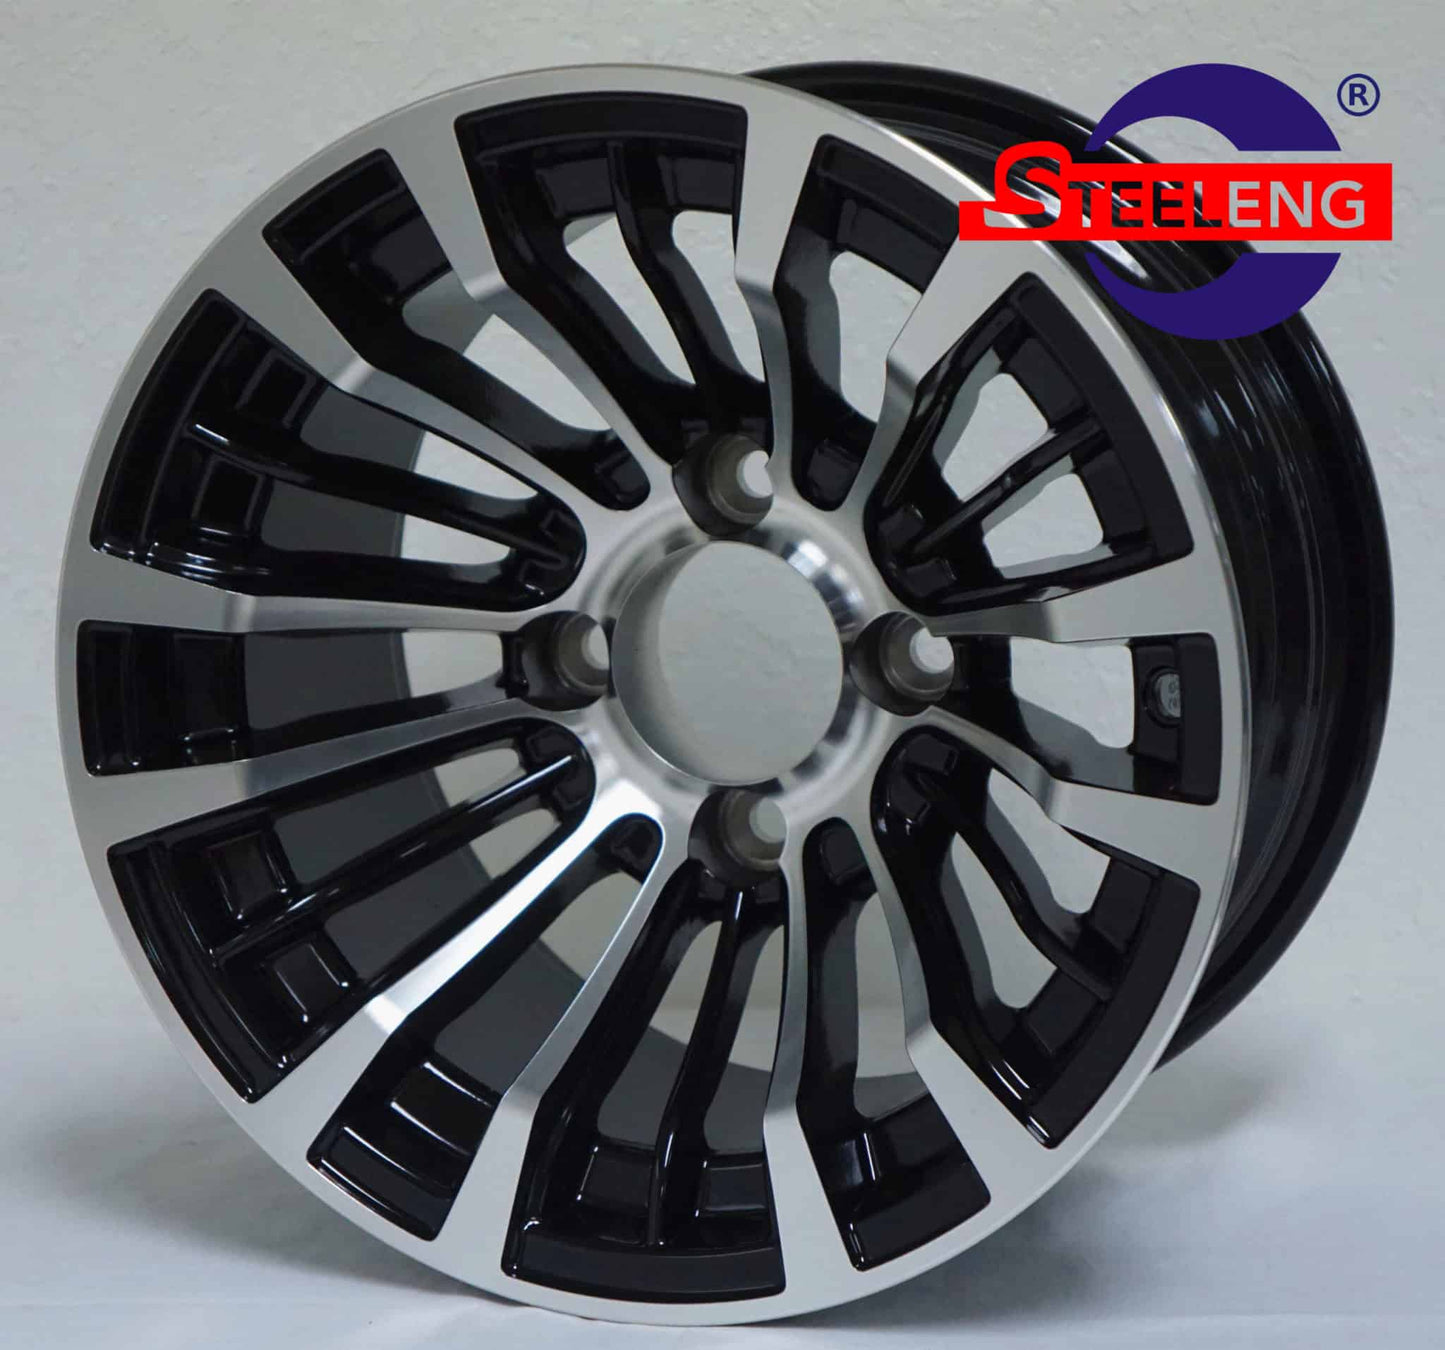 WH1216 – SGC 12″ Matador Machined/Black Wheel – Aluminum Alloy